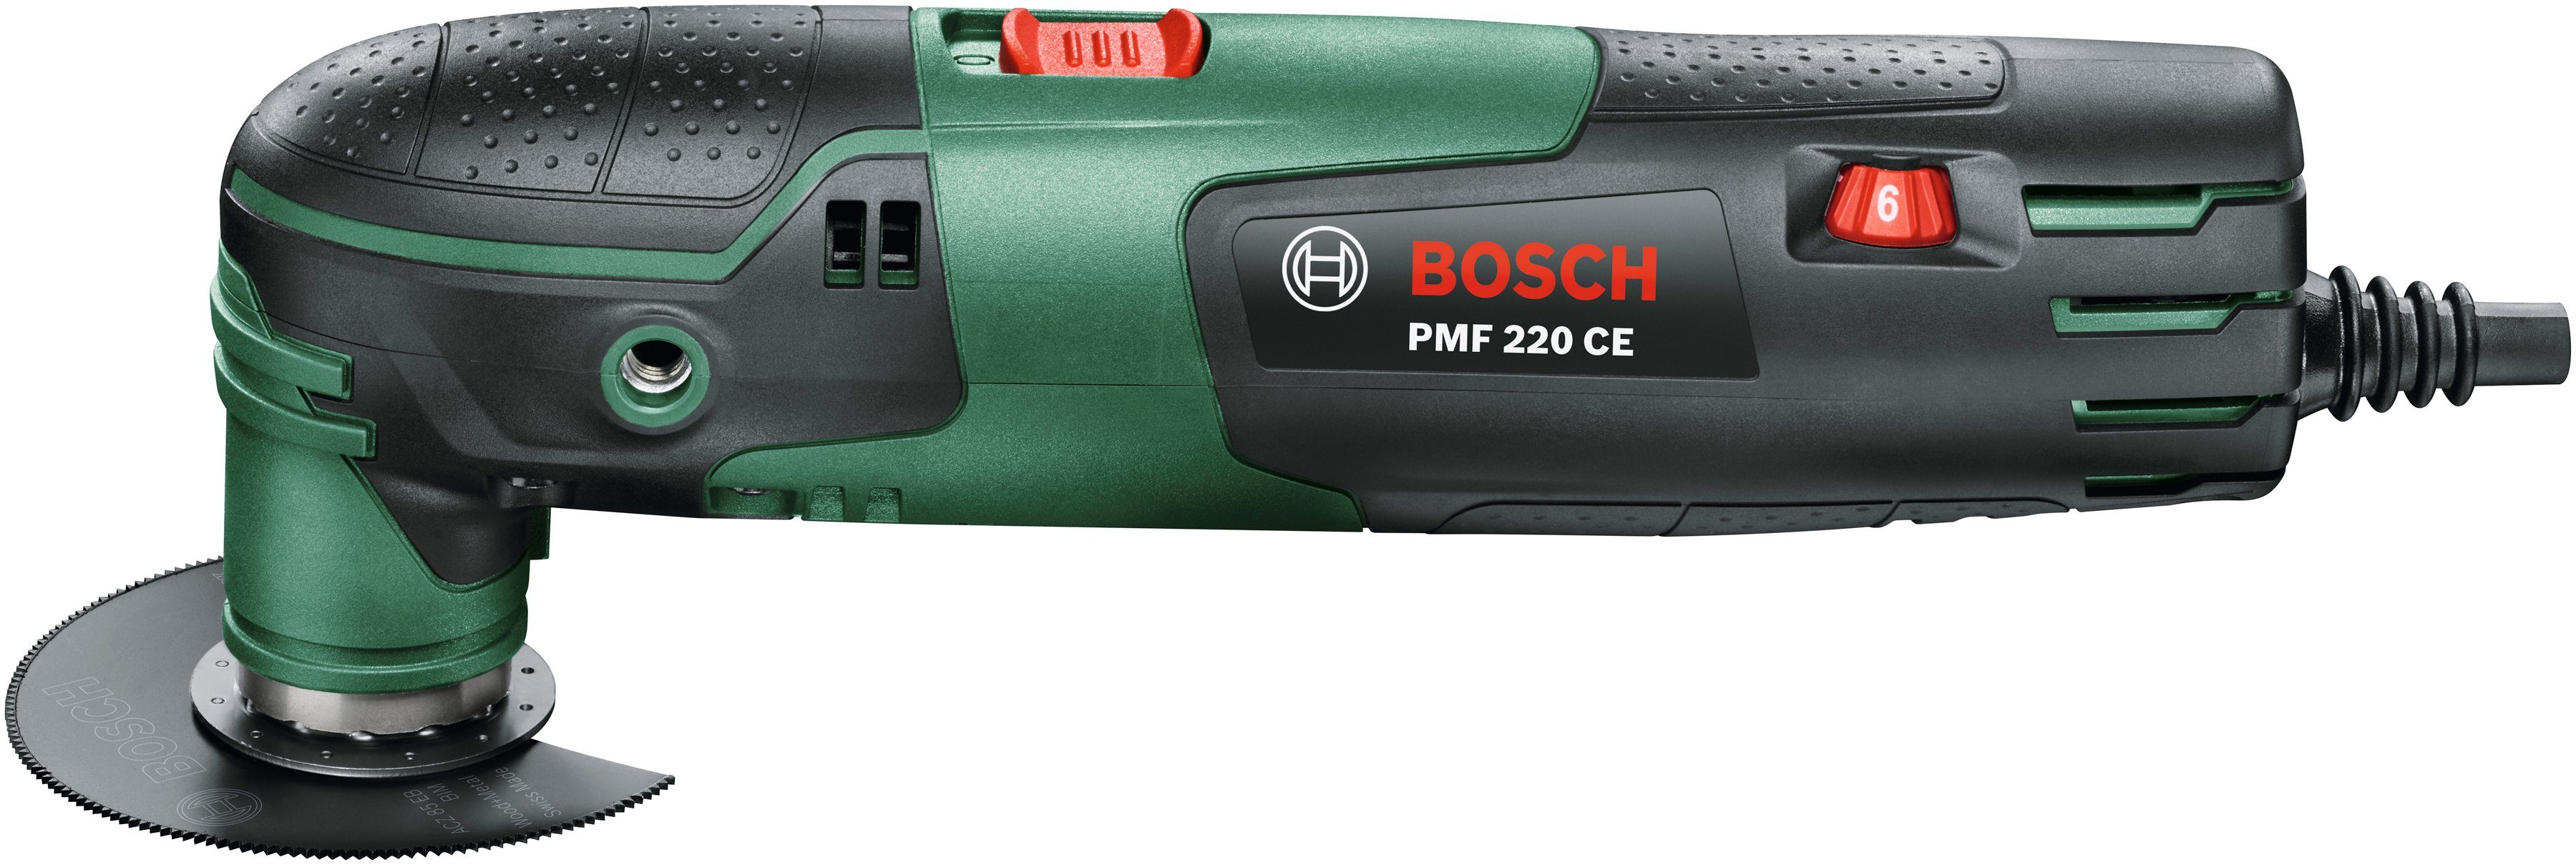 Bosch Home & Garden Elektro-Multifunktionswerkzeug CE, PMF und 220 W, 220 inkl. Kunststoffkoffer Zubehör